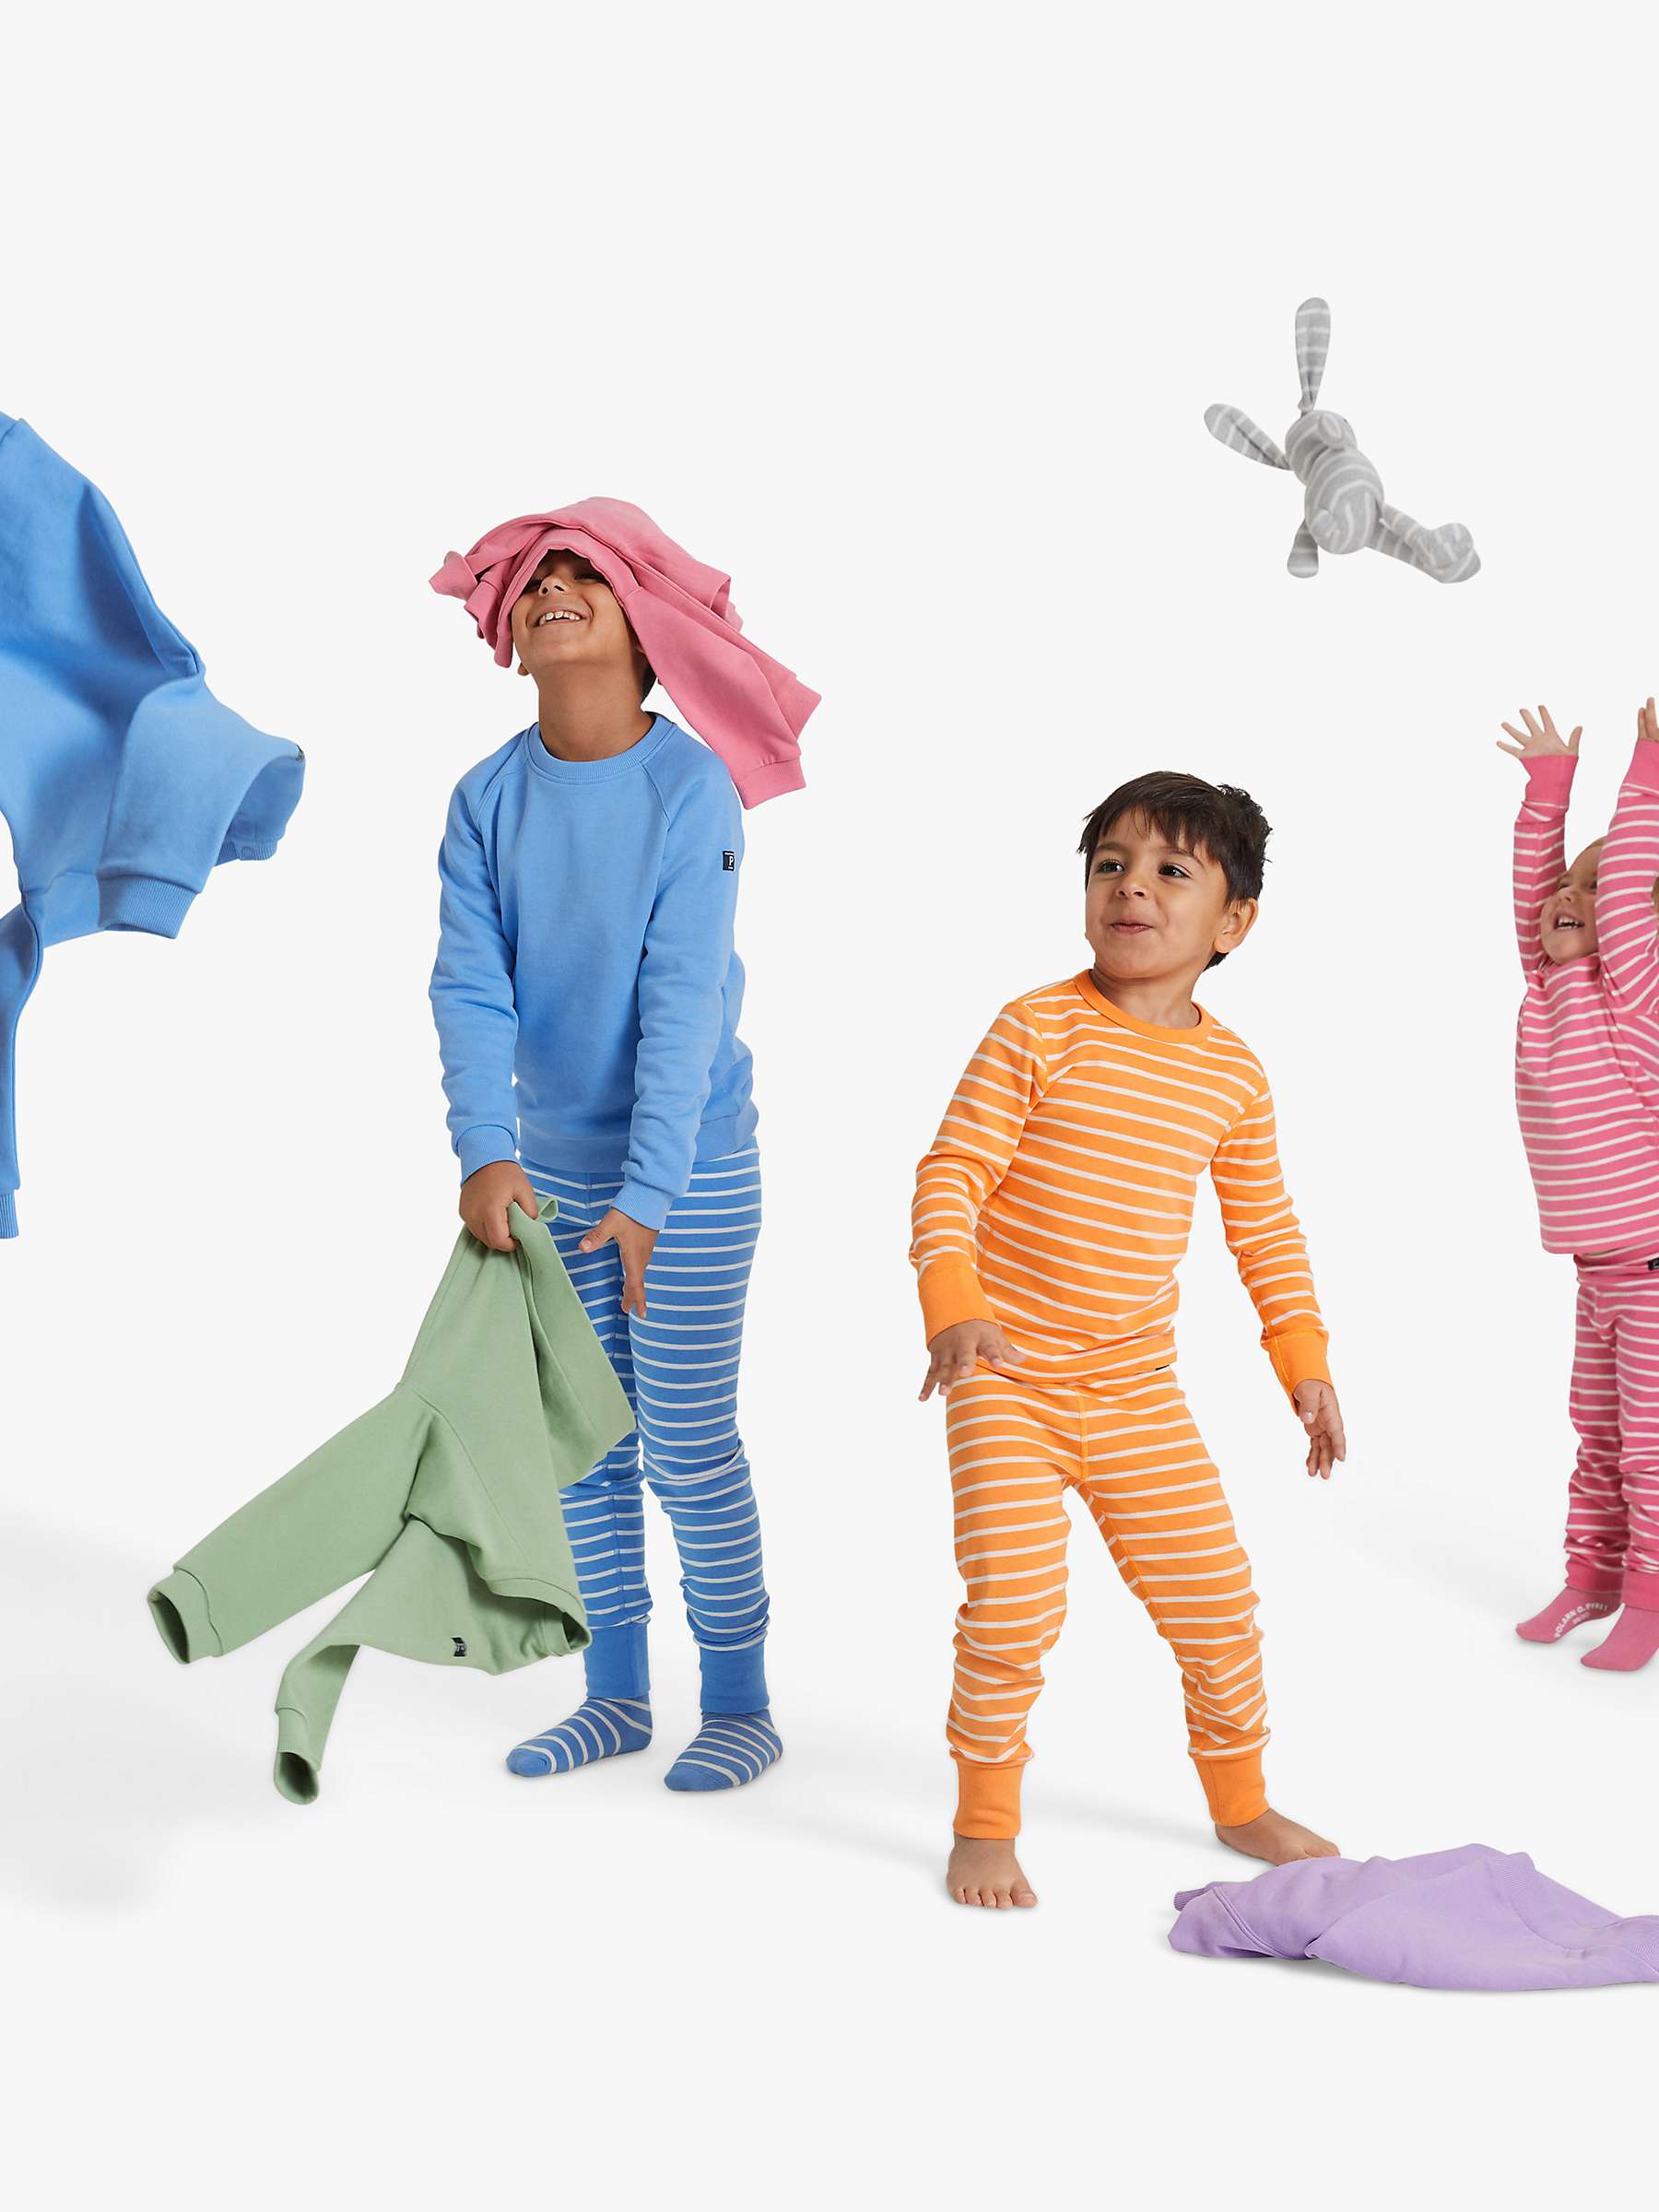 Buy Polarn O. Pyret Kids' Organic Cotton Stripe Top Online at johnlewis.com